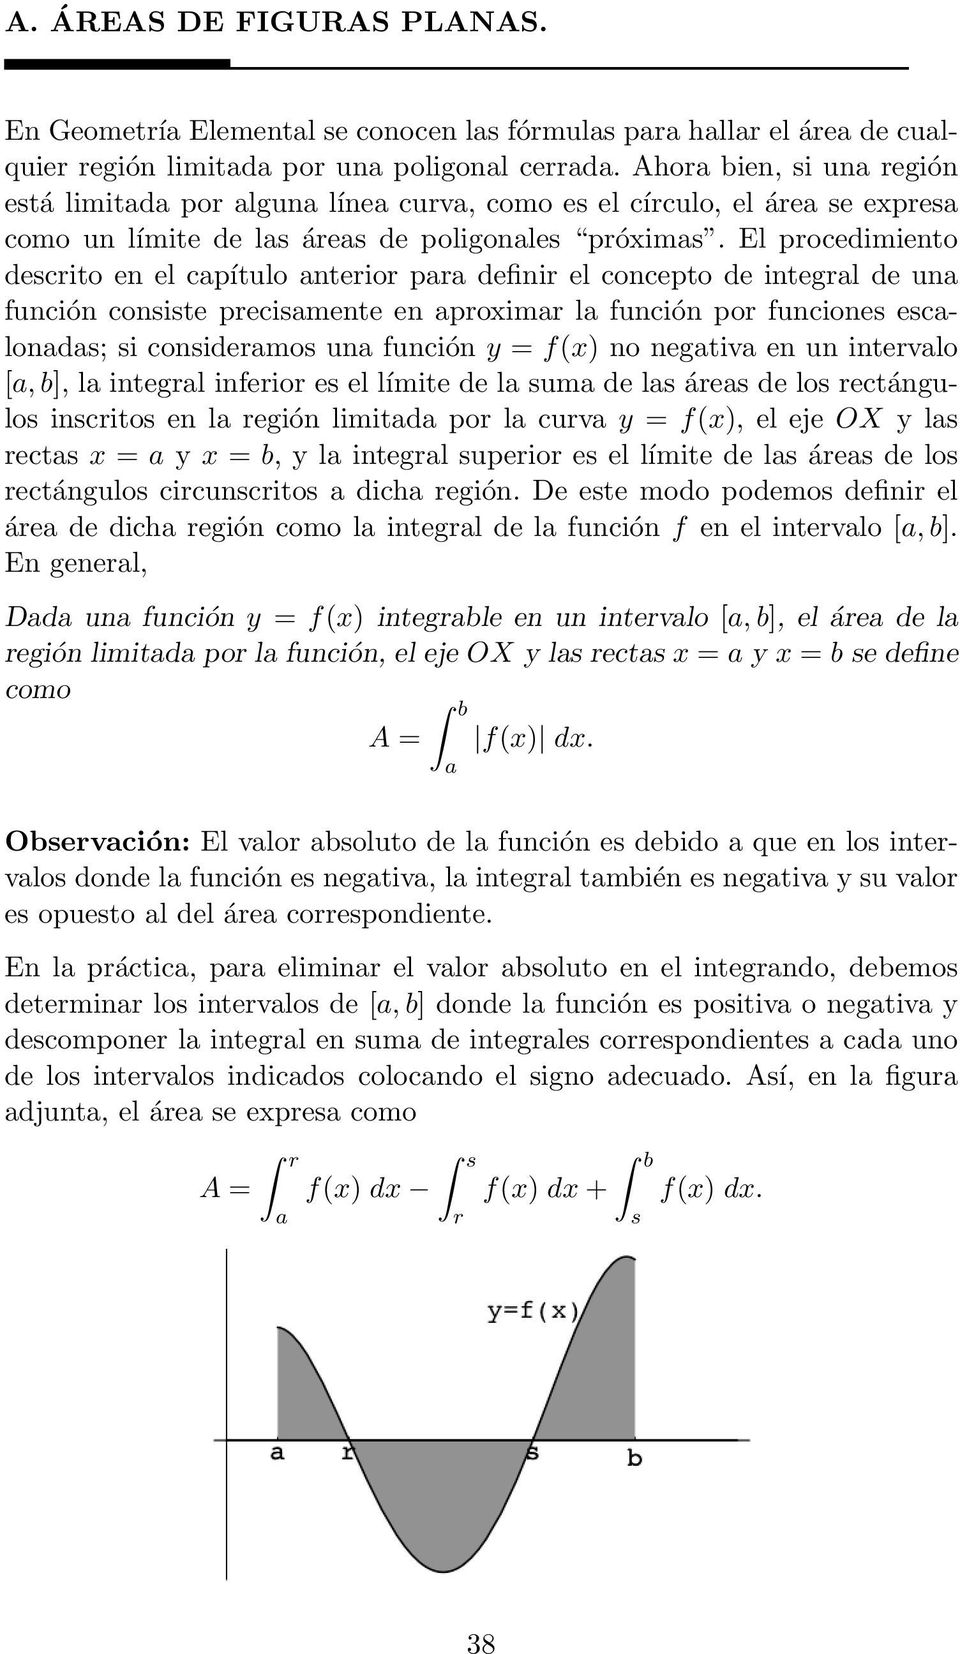 El procedimiento descrito en el capítulo anterior para definir el concepto de integral de una función consiste precisamente en aproximar la función por funciones escalonadas; si consideramos una